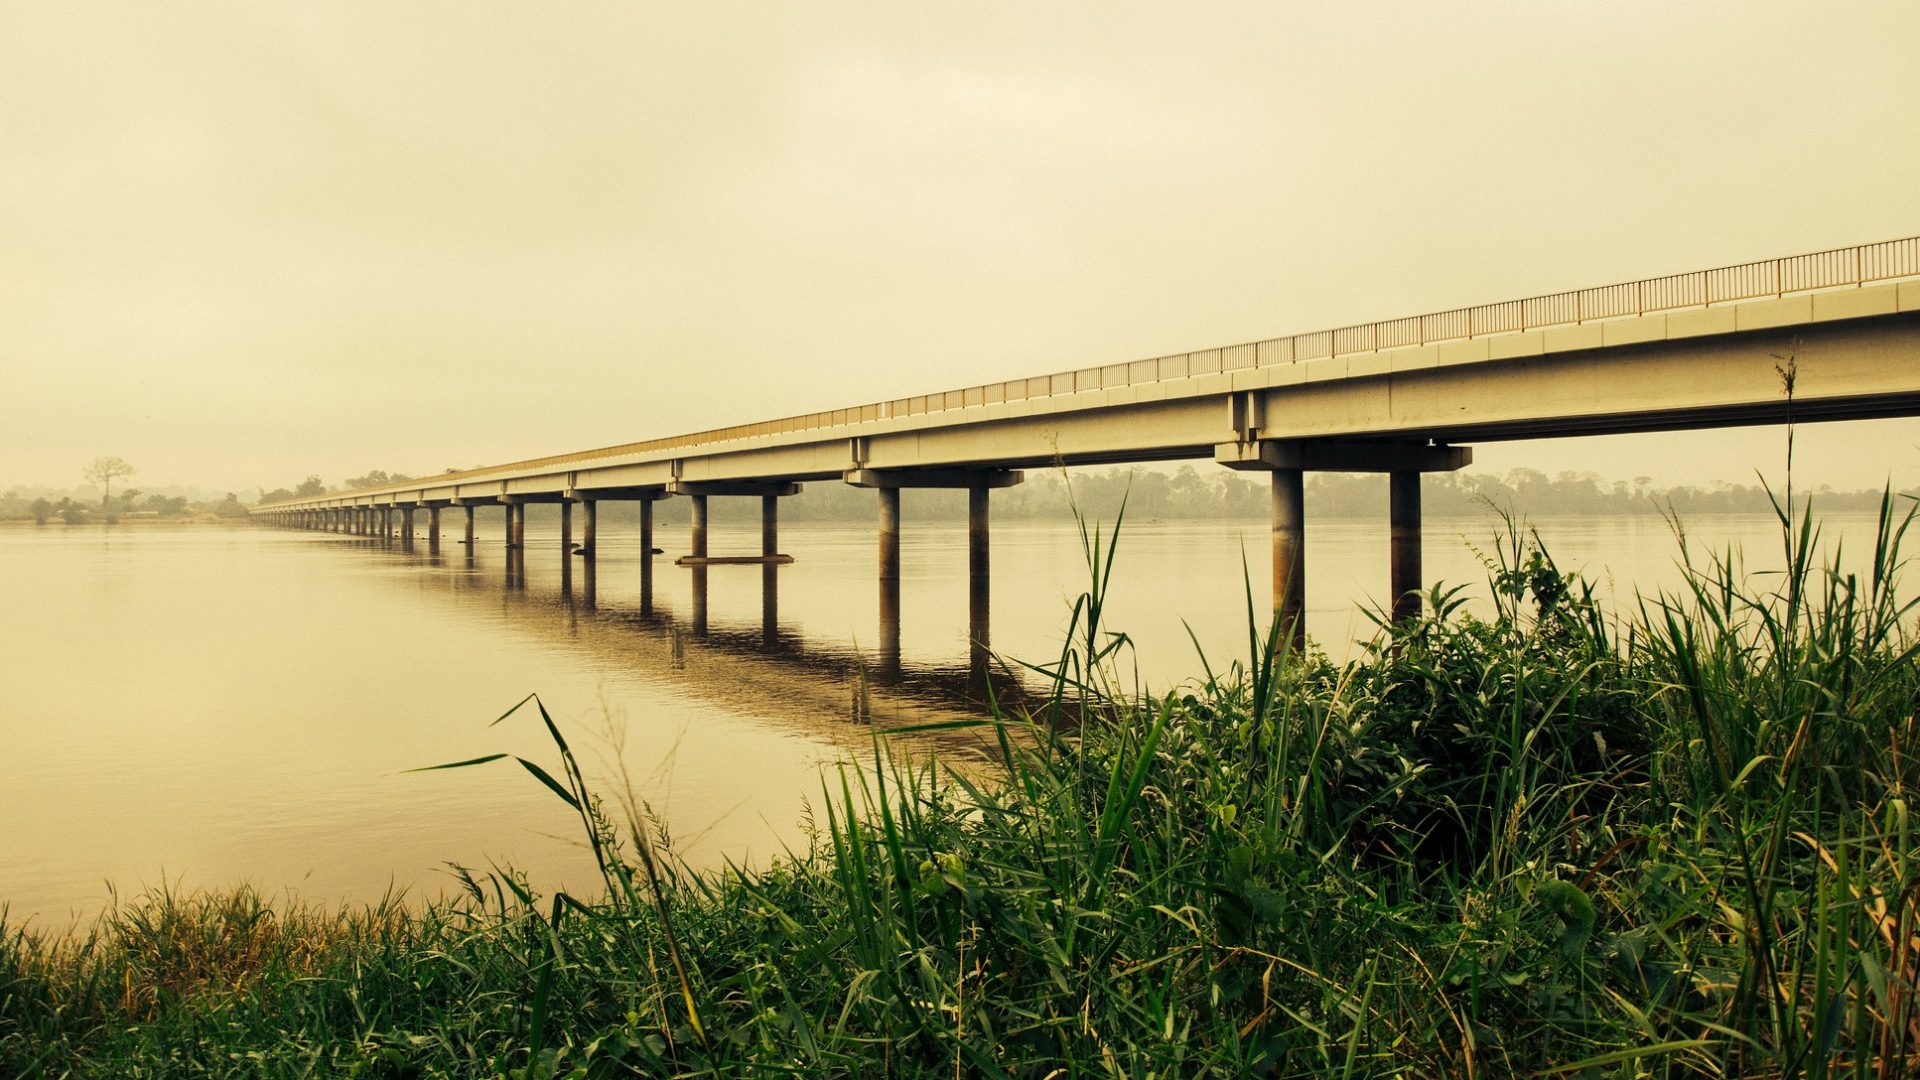 Le véhicule de Mgr Bala a été retrouvé sur un pont de la rivière Sanaga, au Cameroun (Photo:canonim/Flickr/CC BY 2.0)